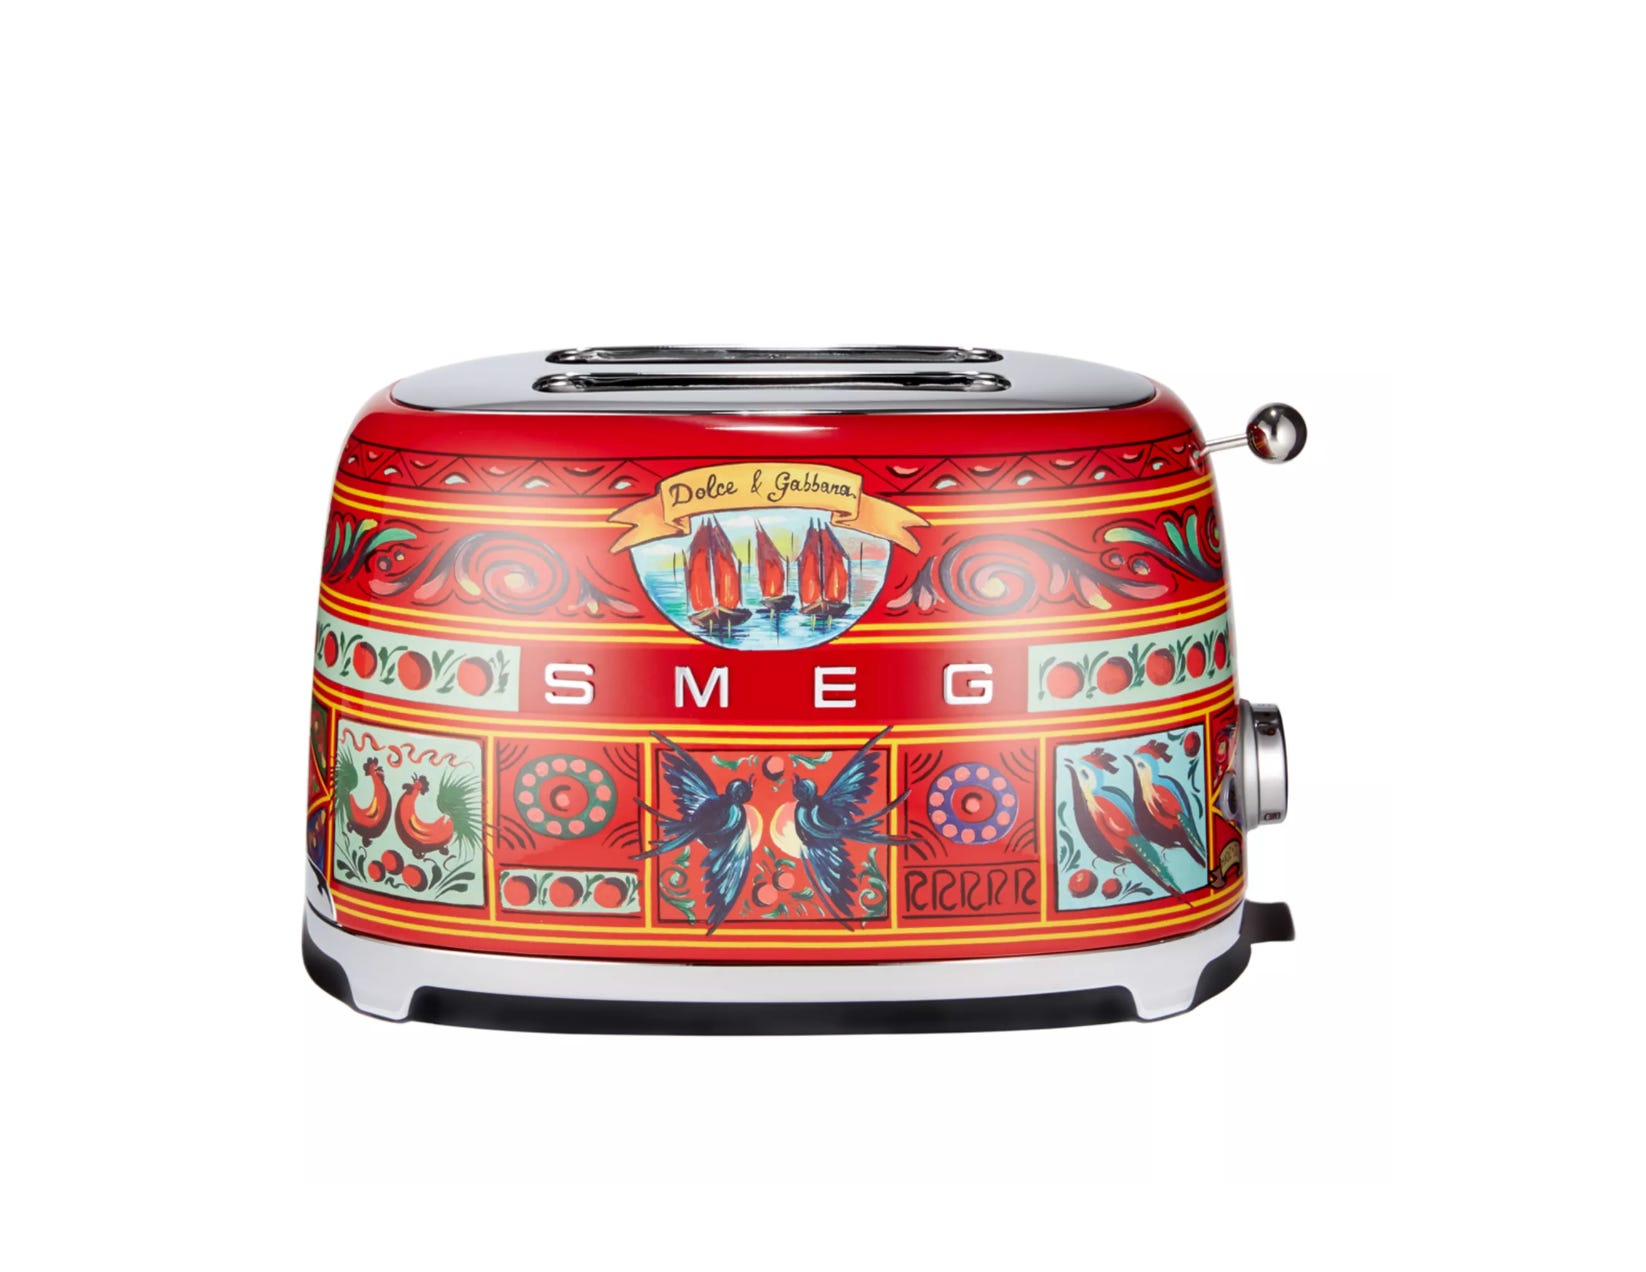 Ein Toaster von Smeg, Dolce & Gabbana.